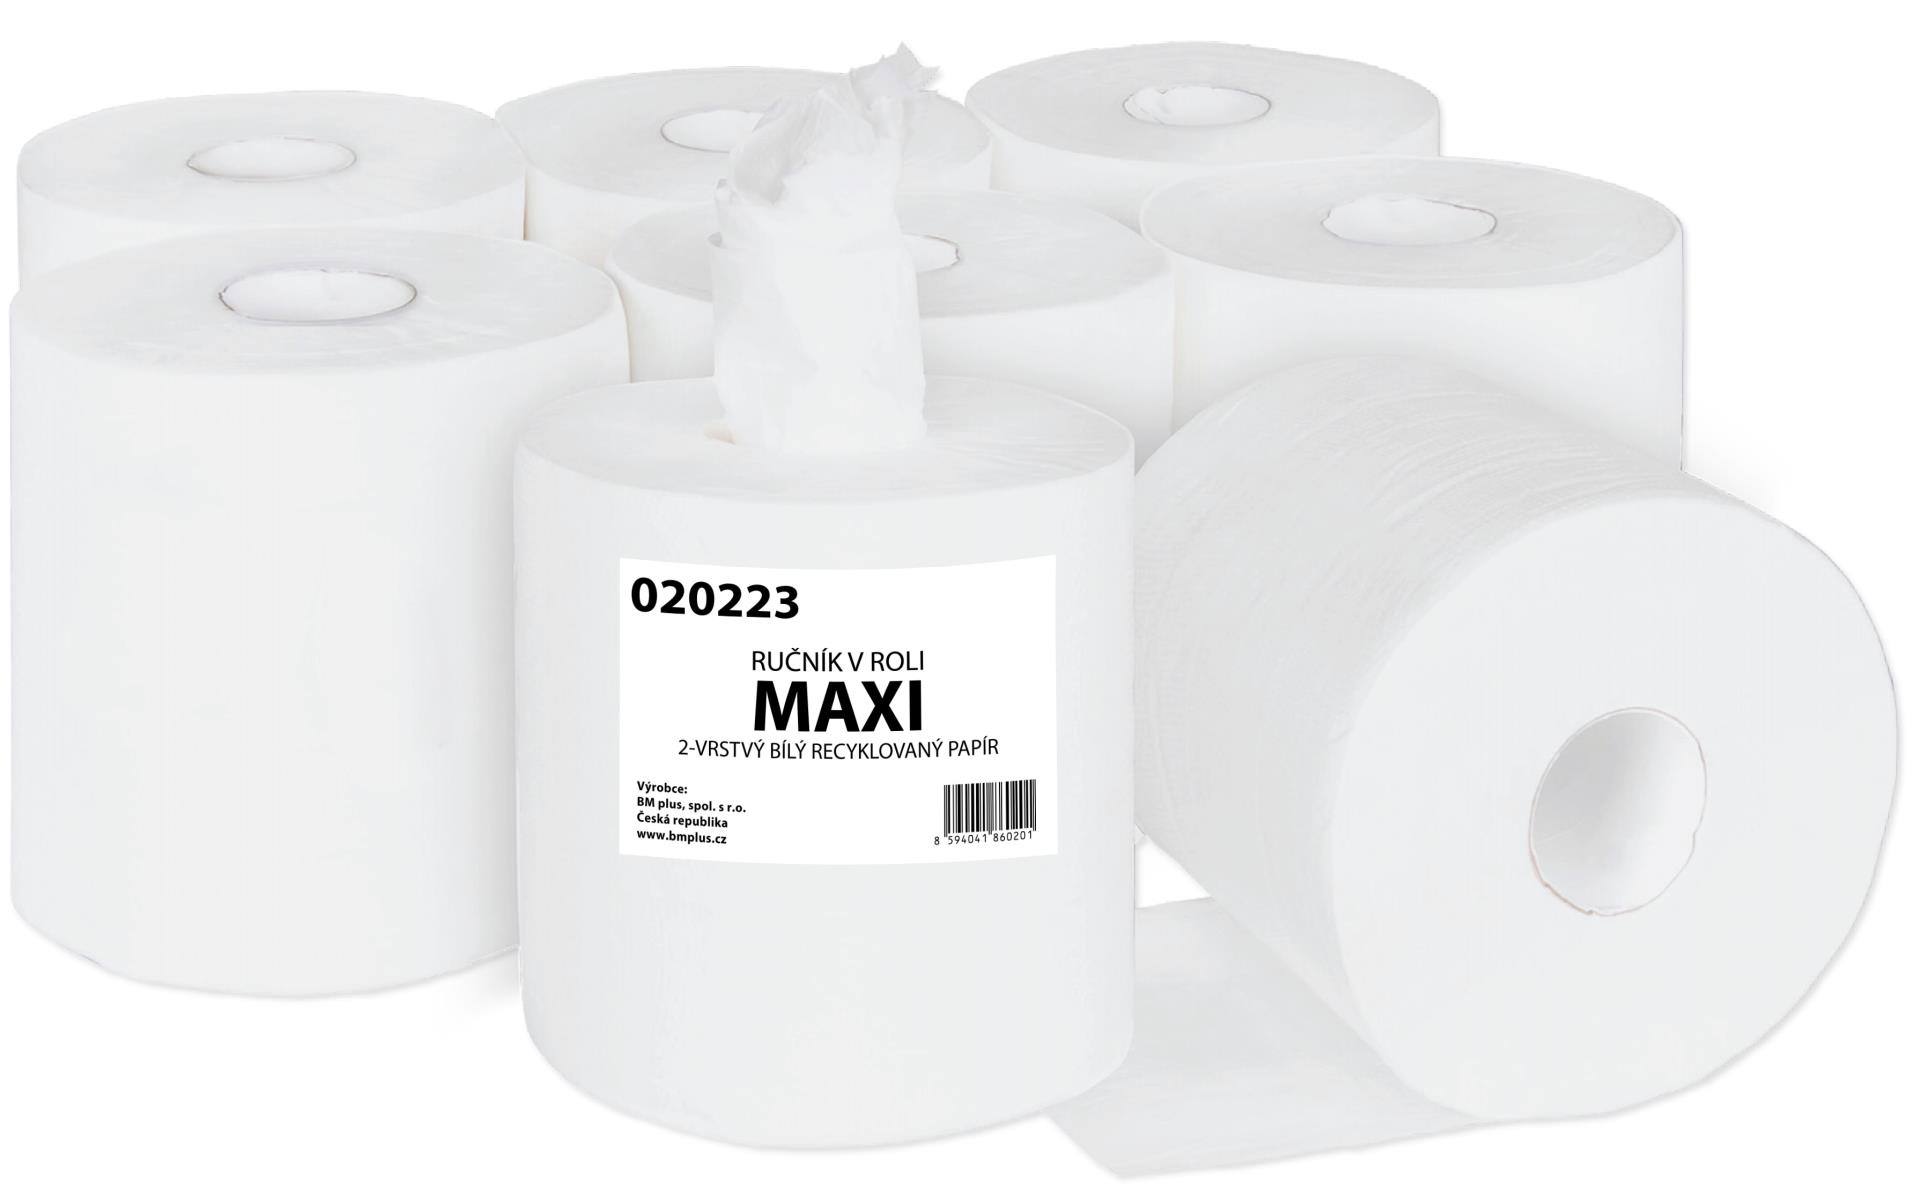 Primasoft Papírové ručníky v roli Maxi - 2vrstvé, bílý recykl, 6 rolí